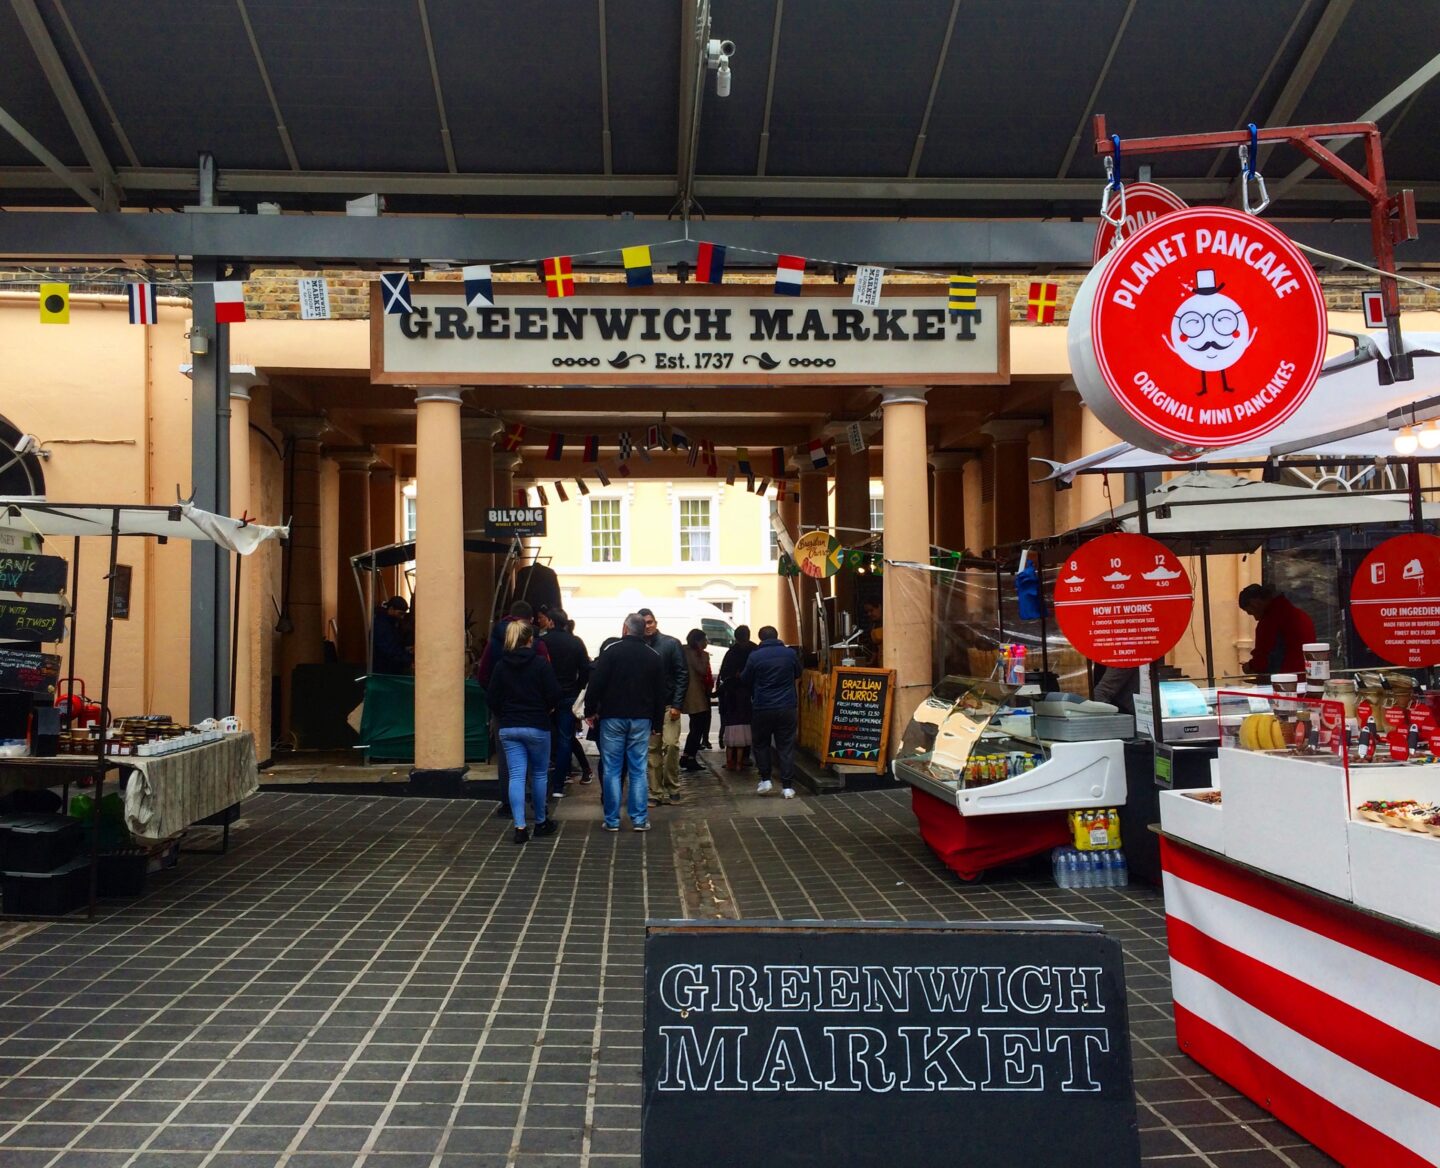 London in Winter, Greenwich market stalls